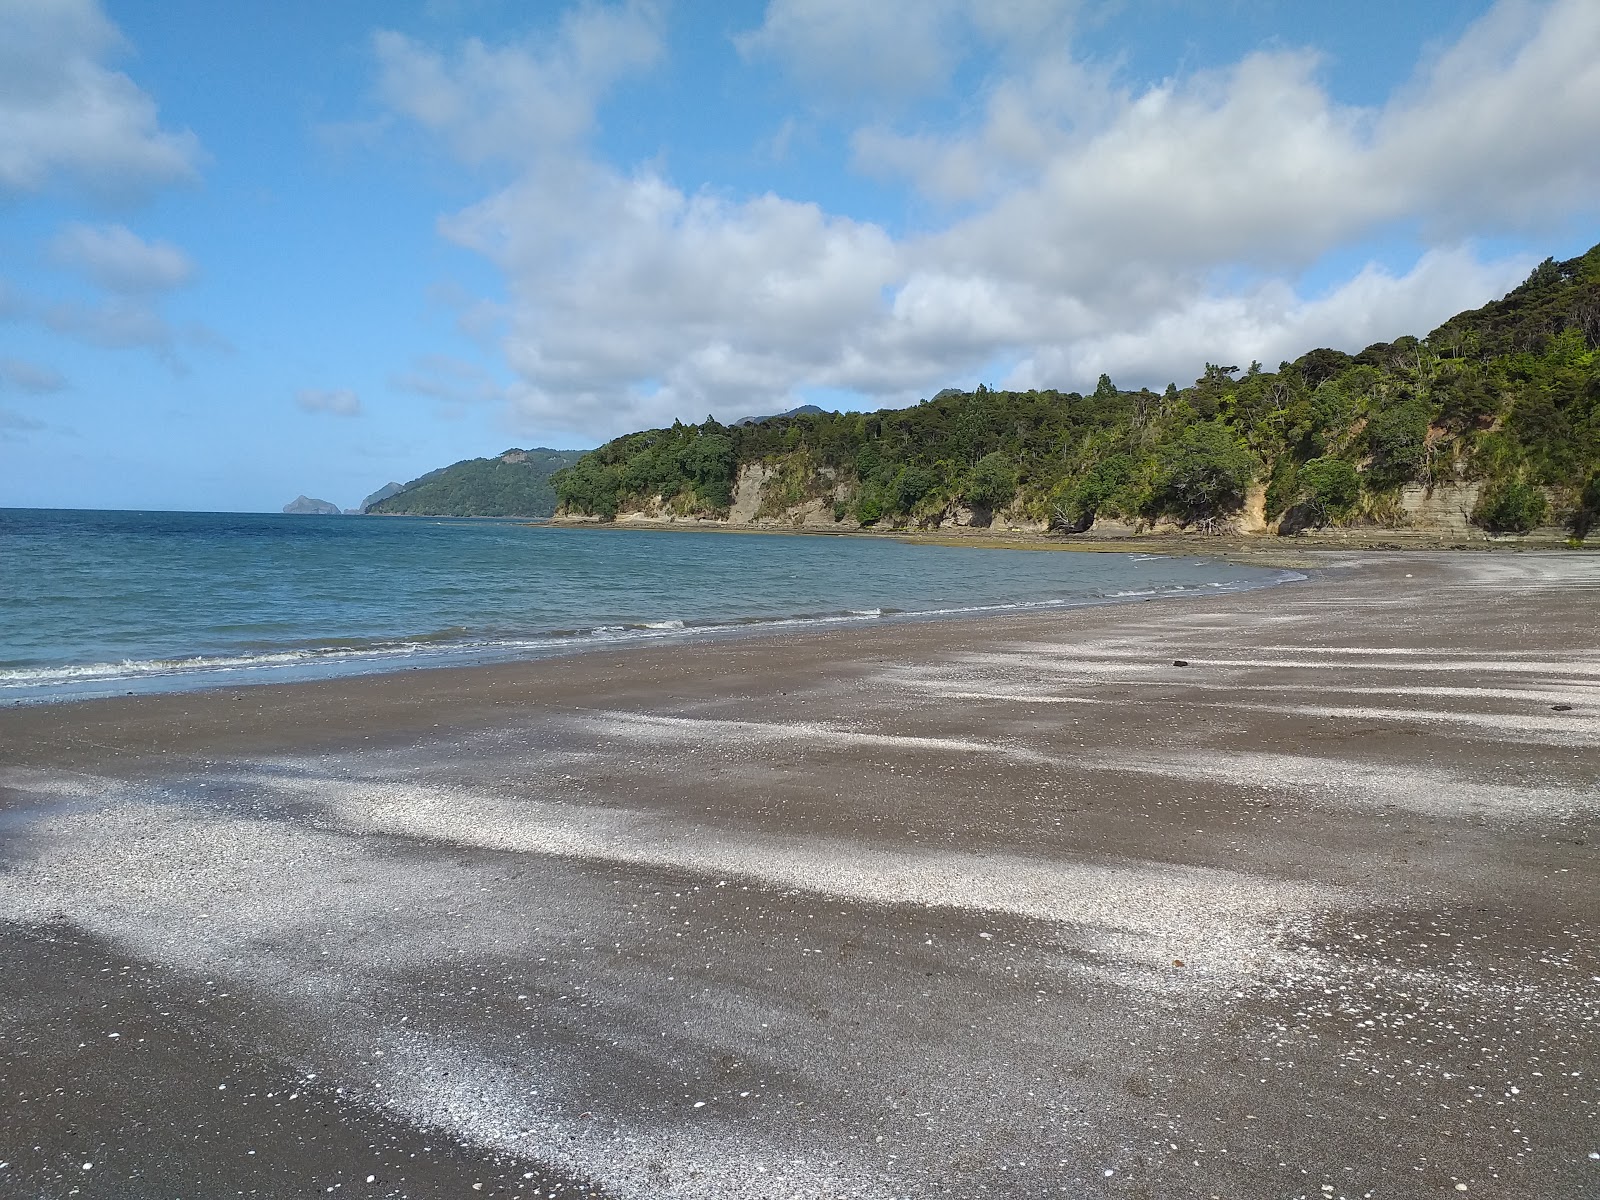 Zdjęcie Kaitarakihi Beach z powierzchnią szary piasek